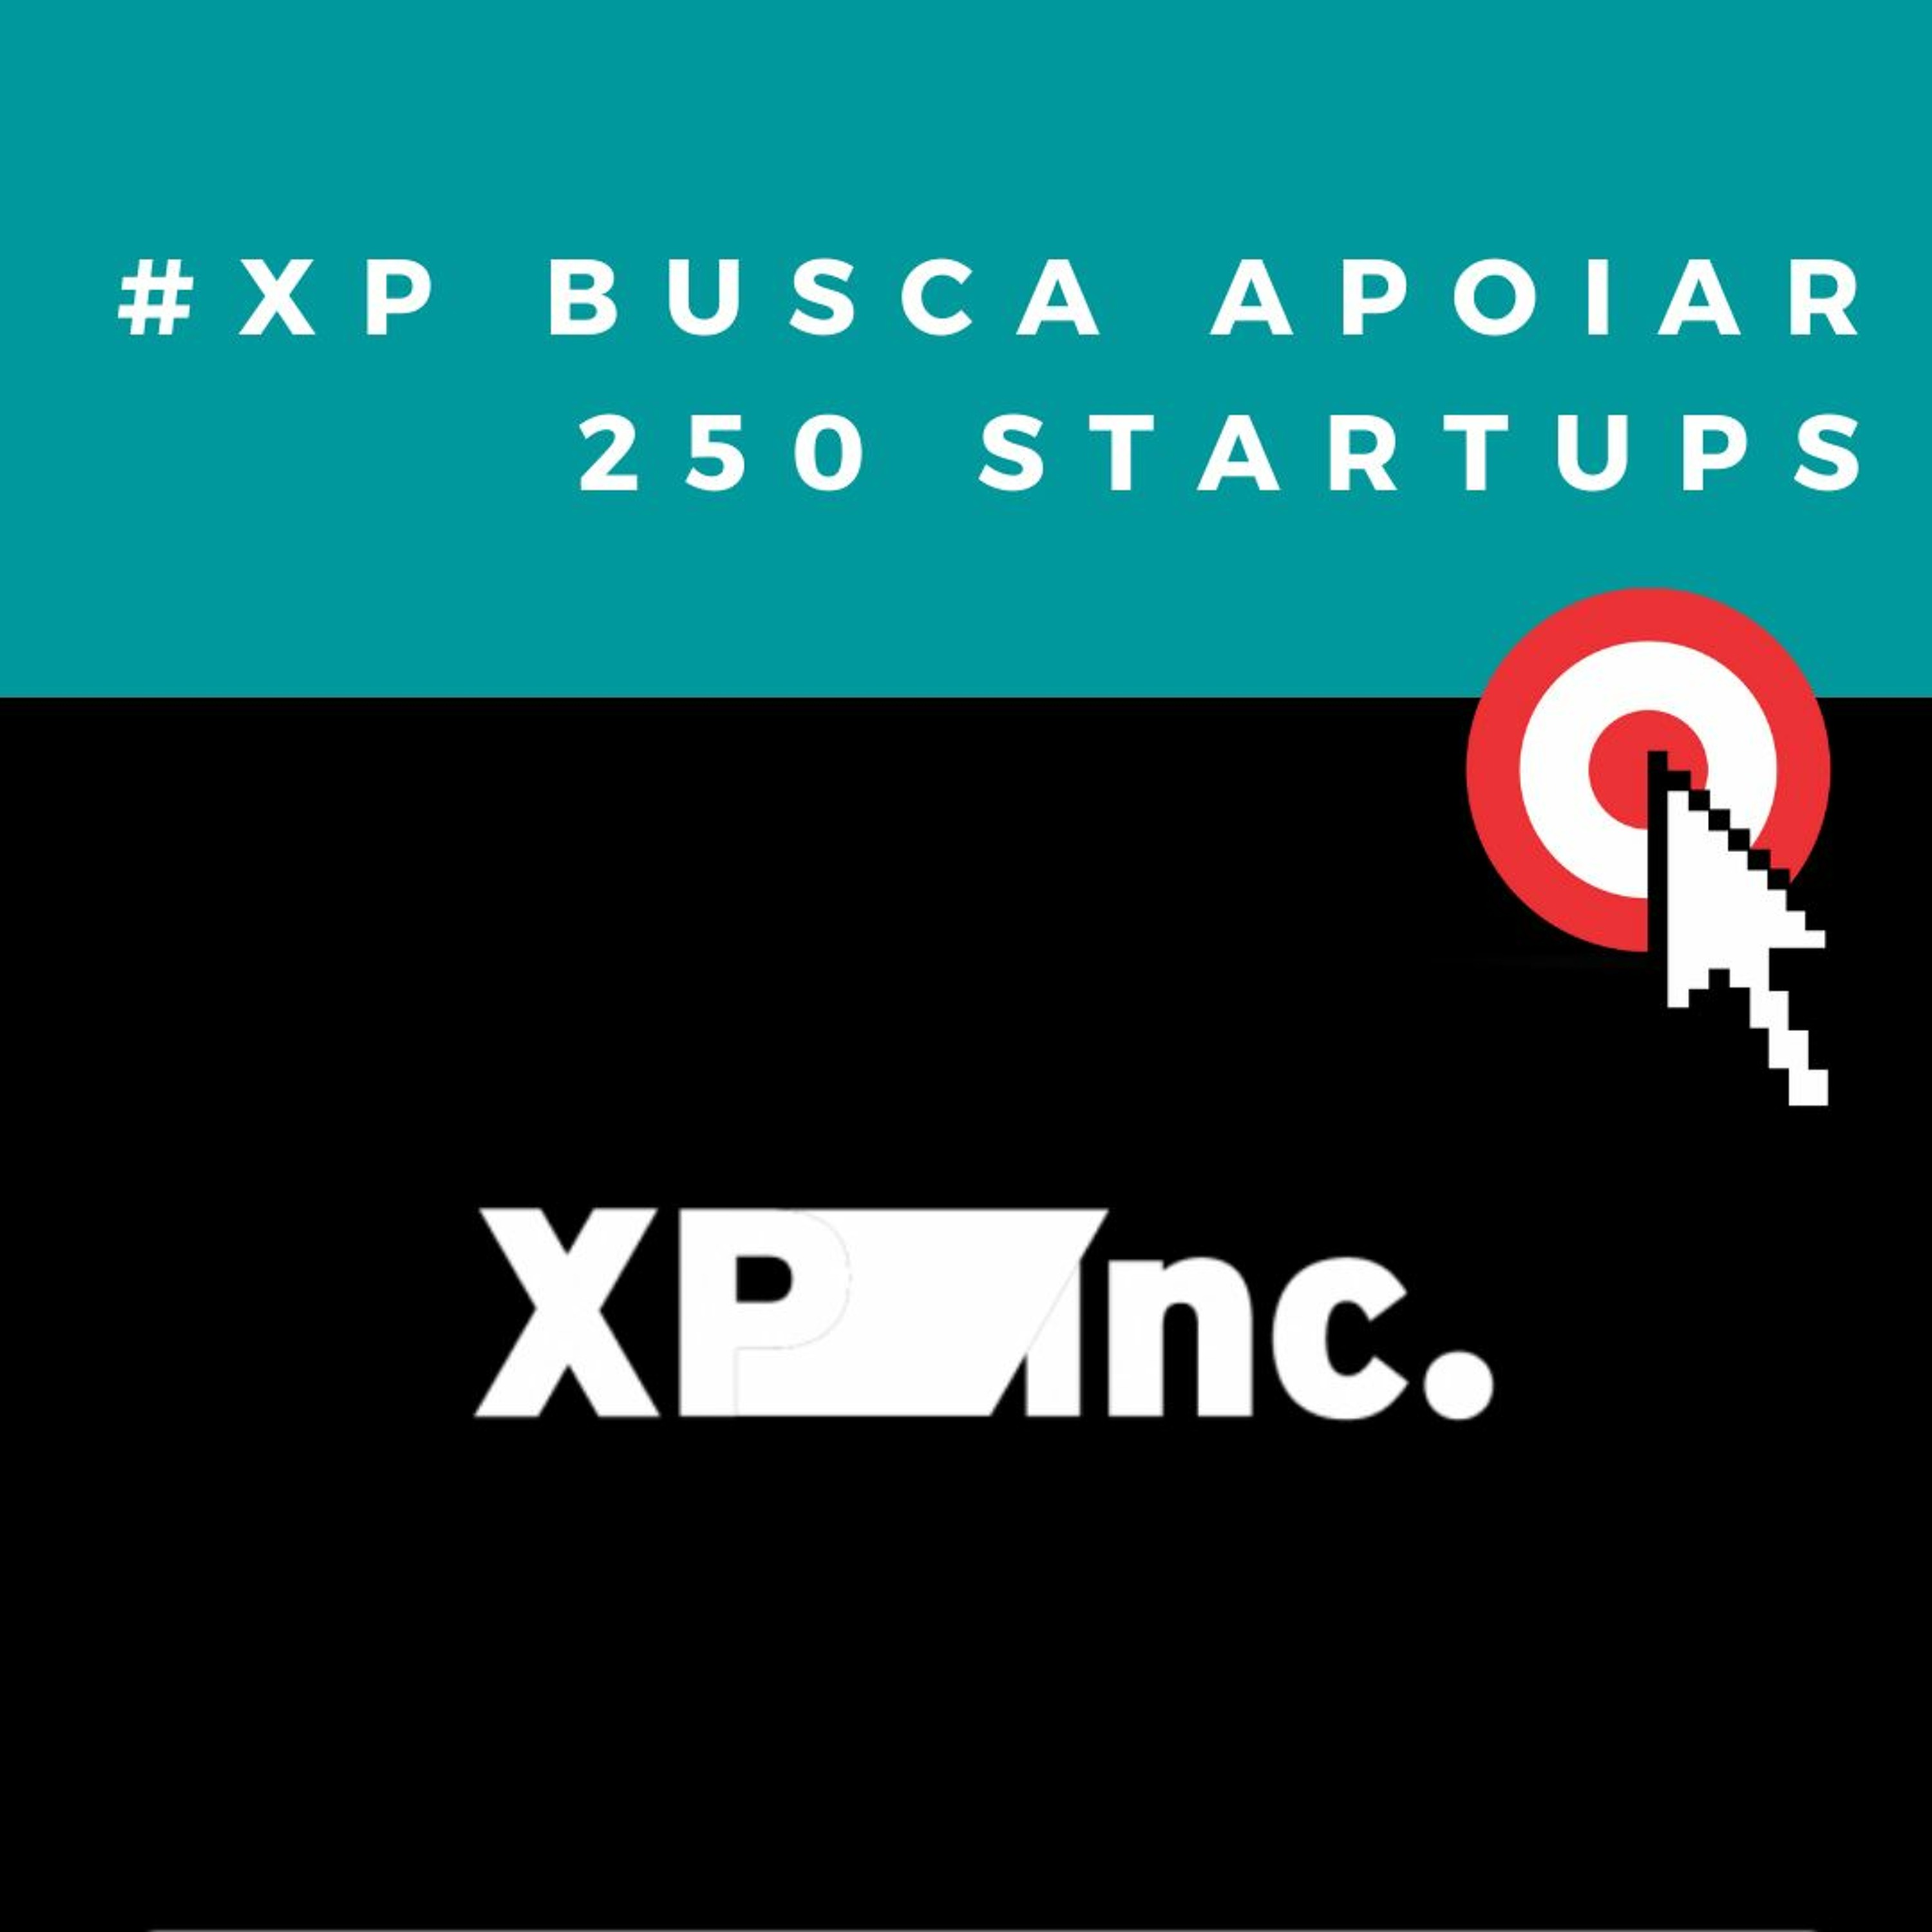 XP Inc. cria nova linha de negócio que busca apoiar 250 startups dentro de um ano